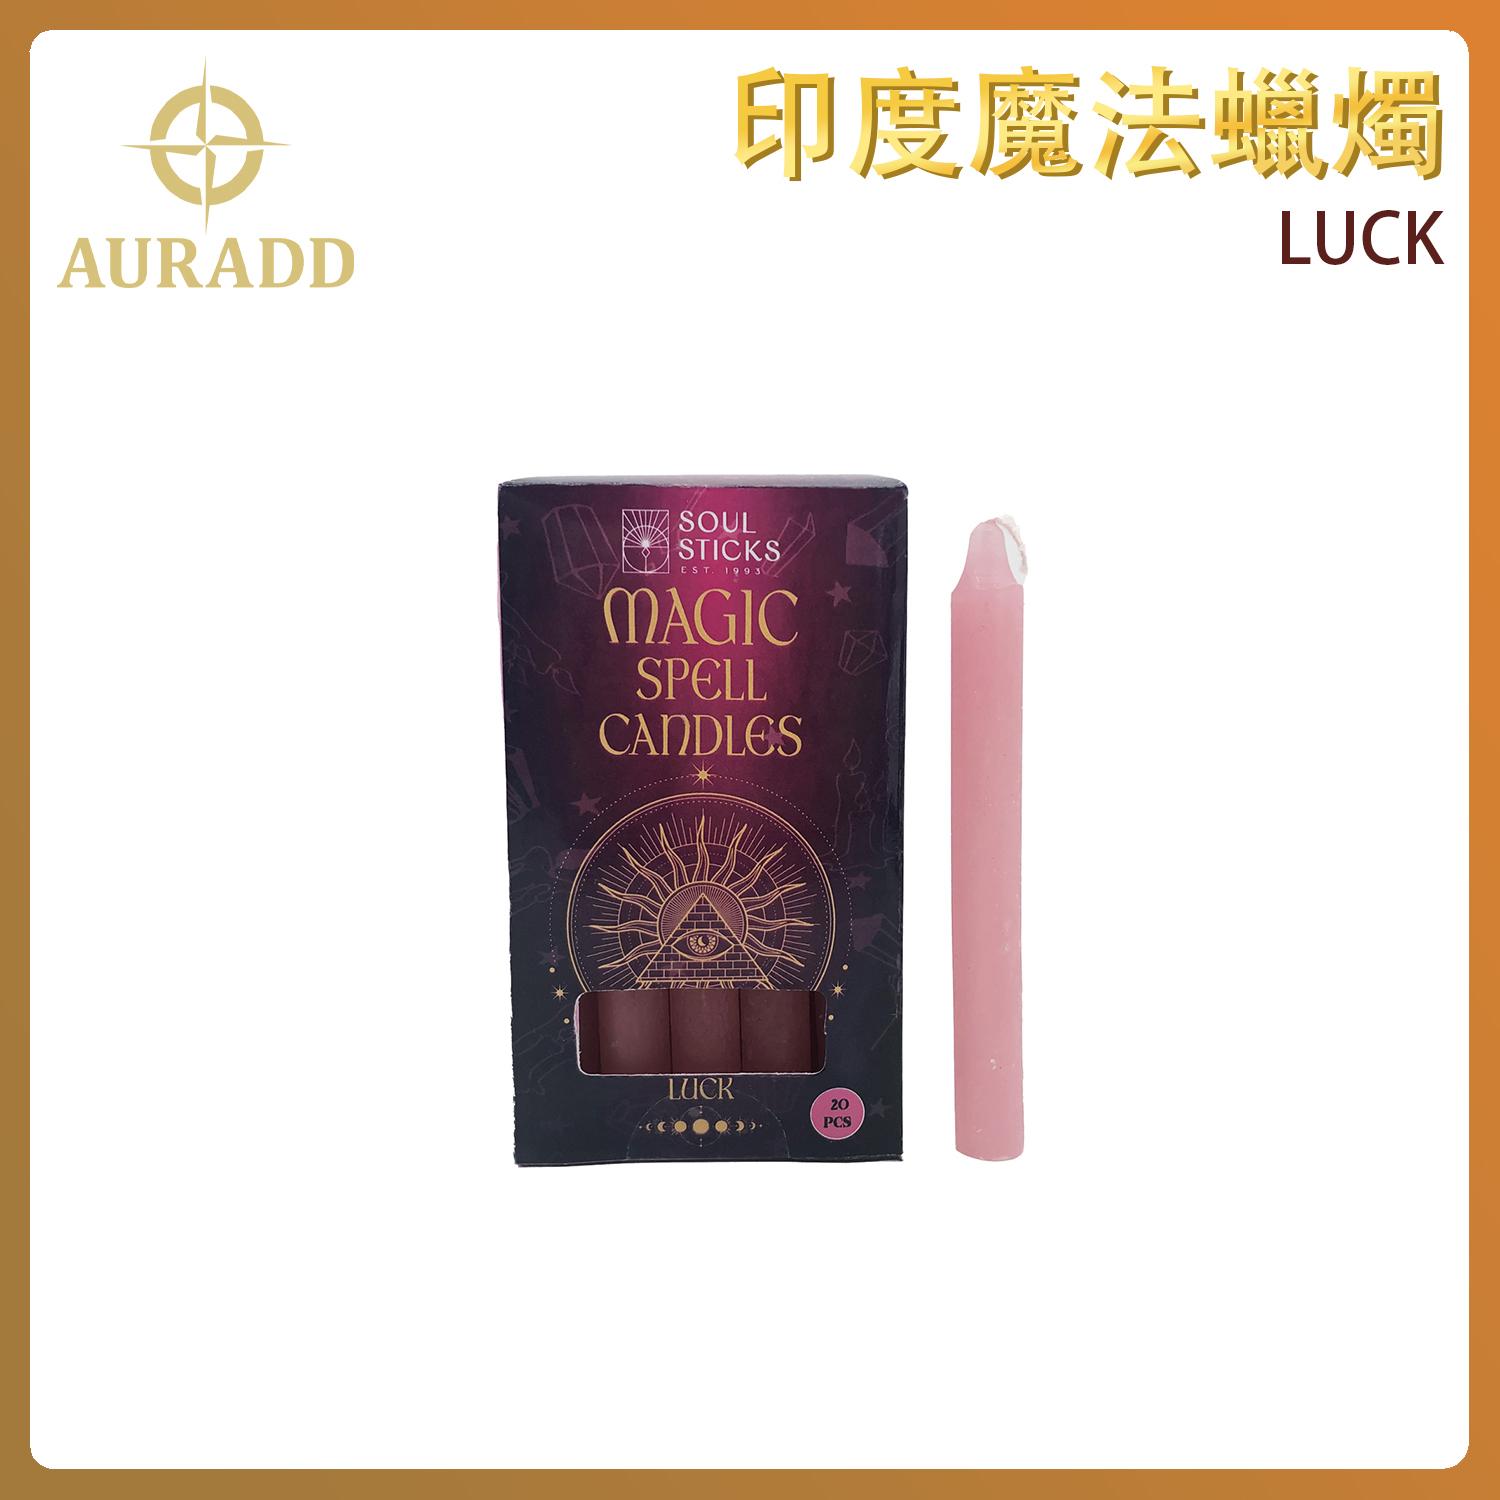 20件裝粉紅色印度魔法蠟燭(運氣LUCK) 2小時彩色蠟燭 錐形蠟燭 靈魂棒 AD-CANDLE-LUCK